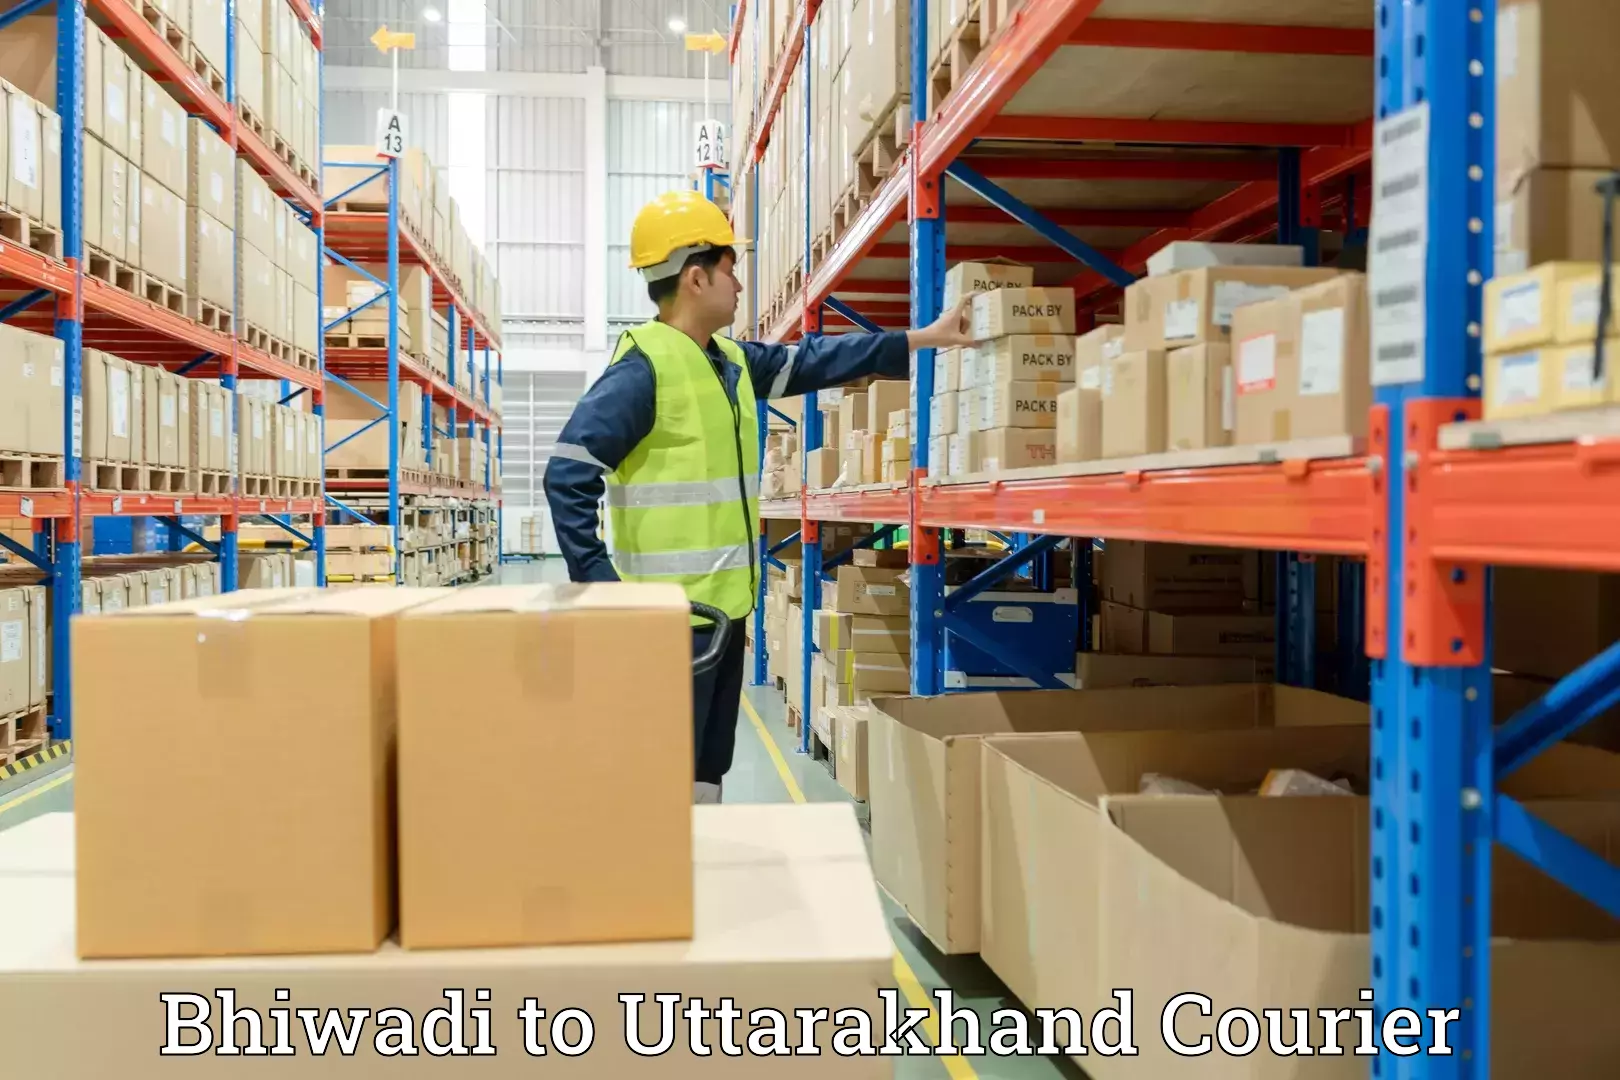 Professional packing services Bhiwadi to Bageshwar